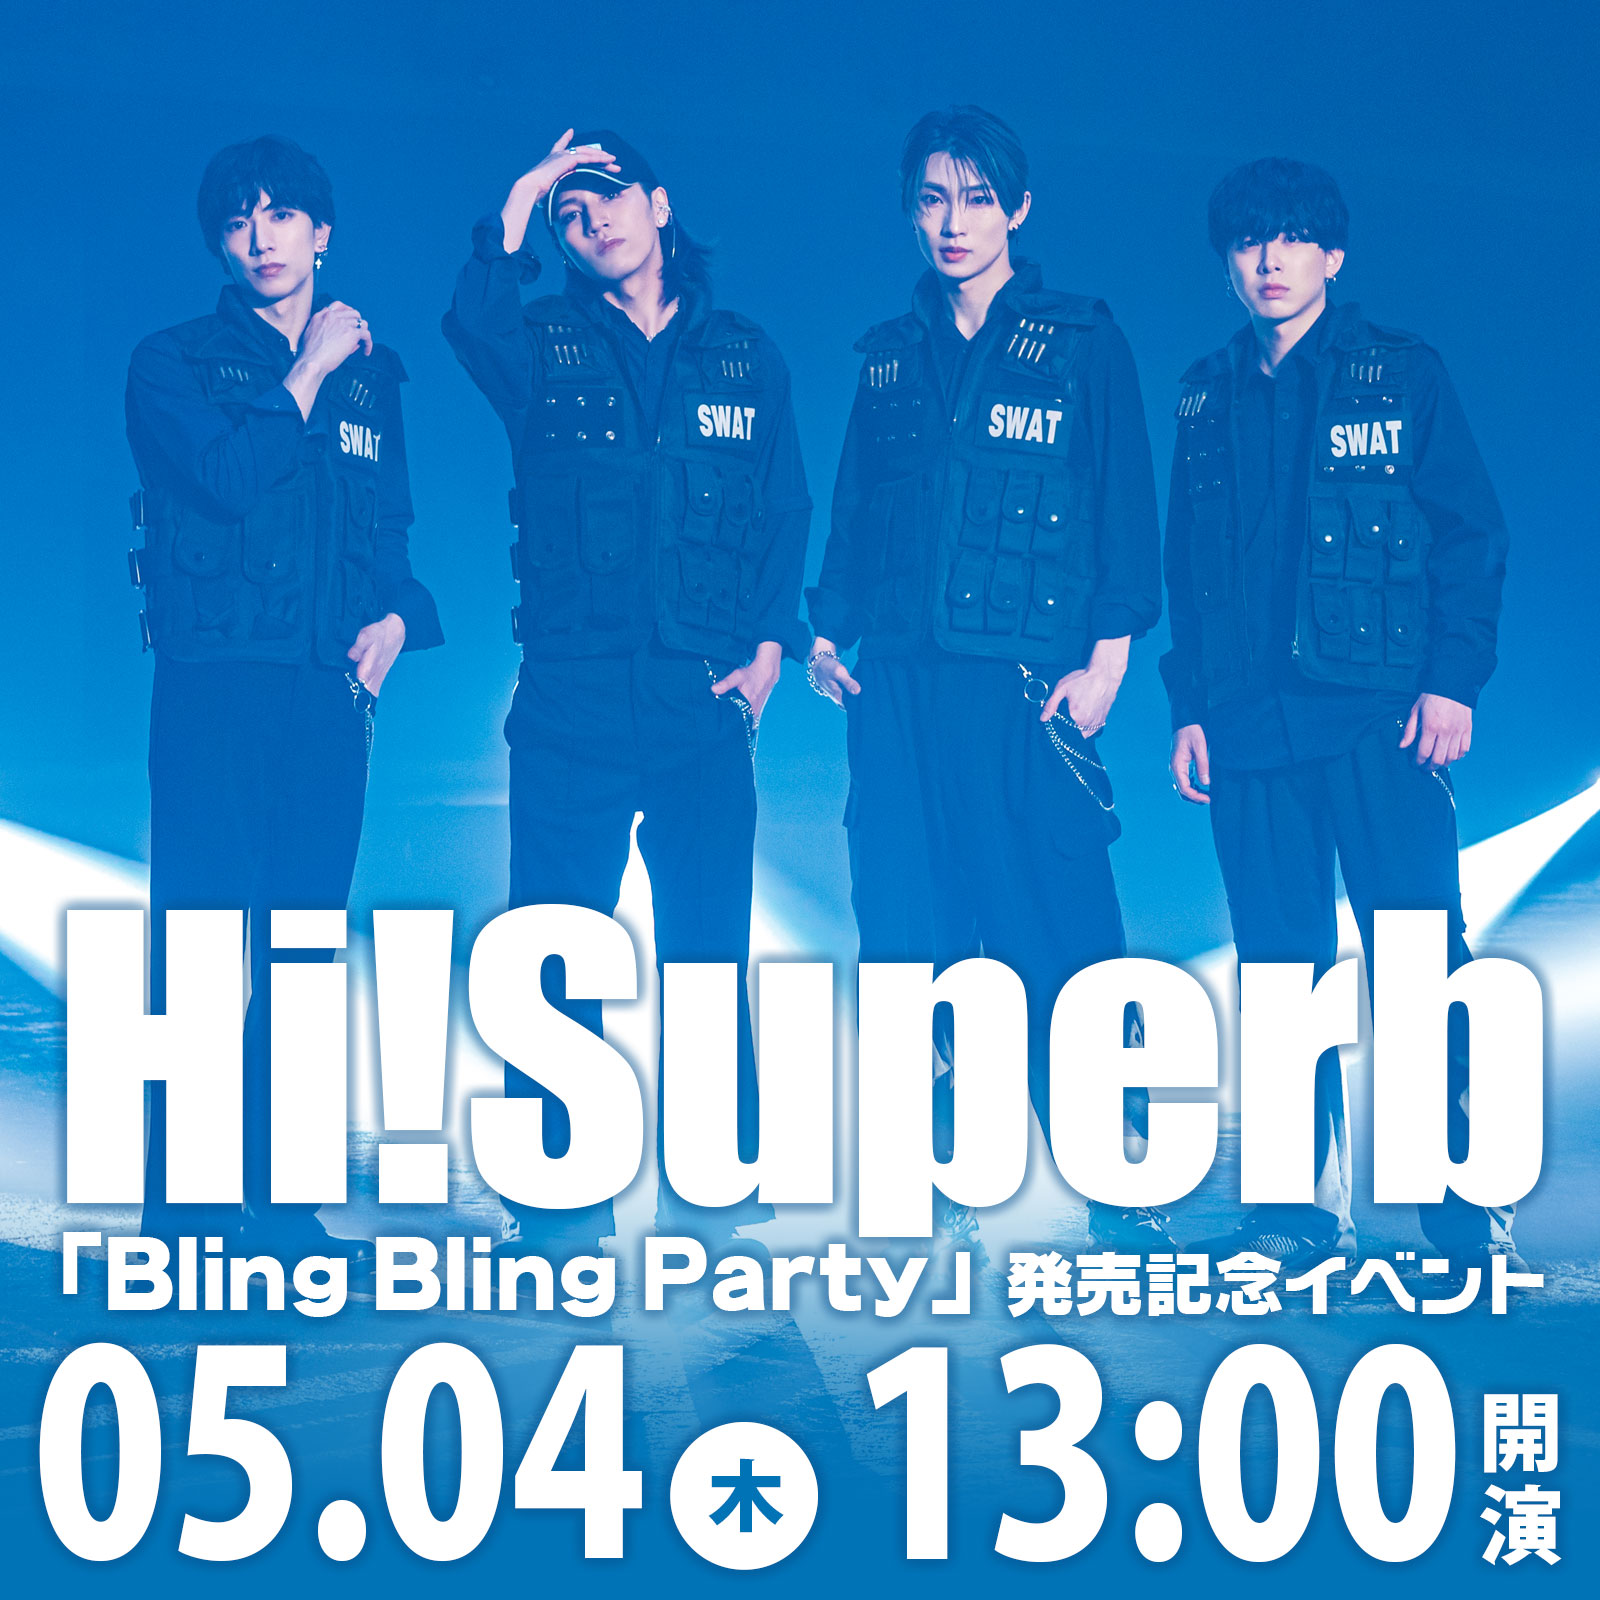 5/4（木・祝）Hi!Superb「Bling Bling Party」発売記念イベント